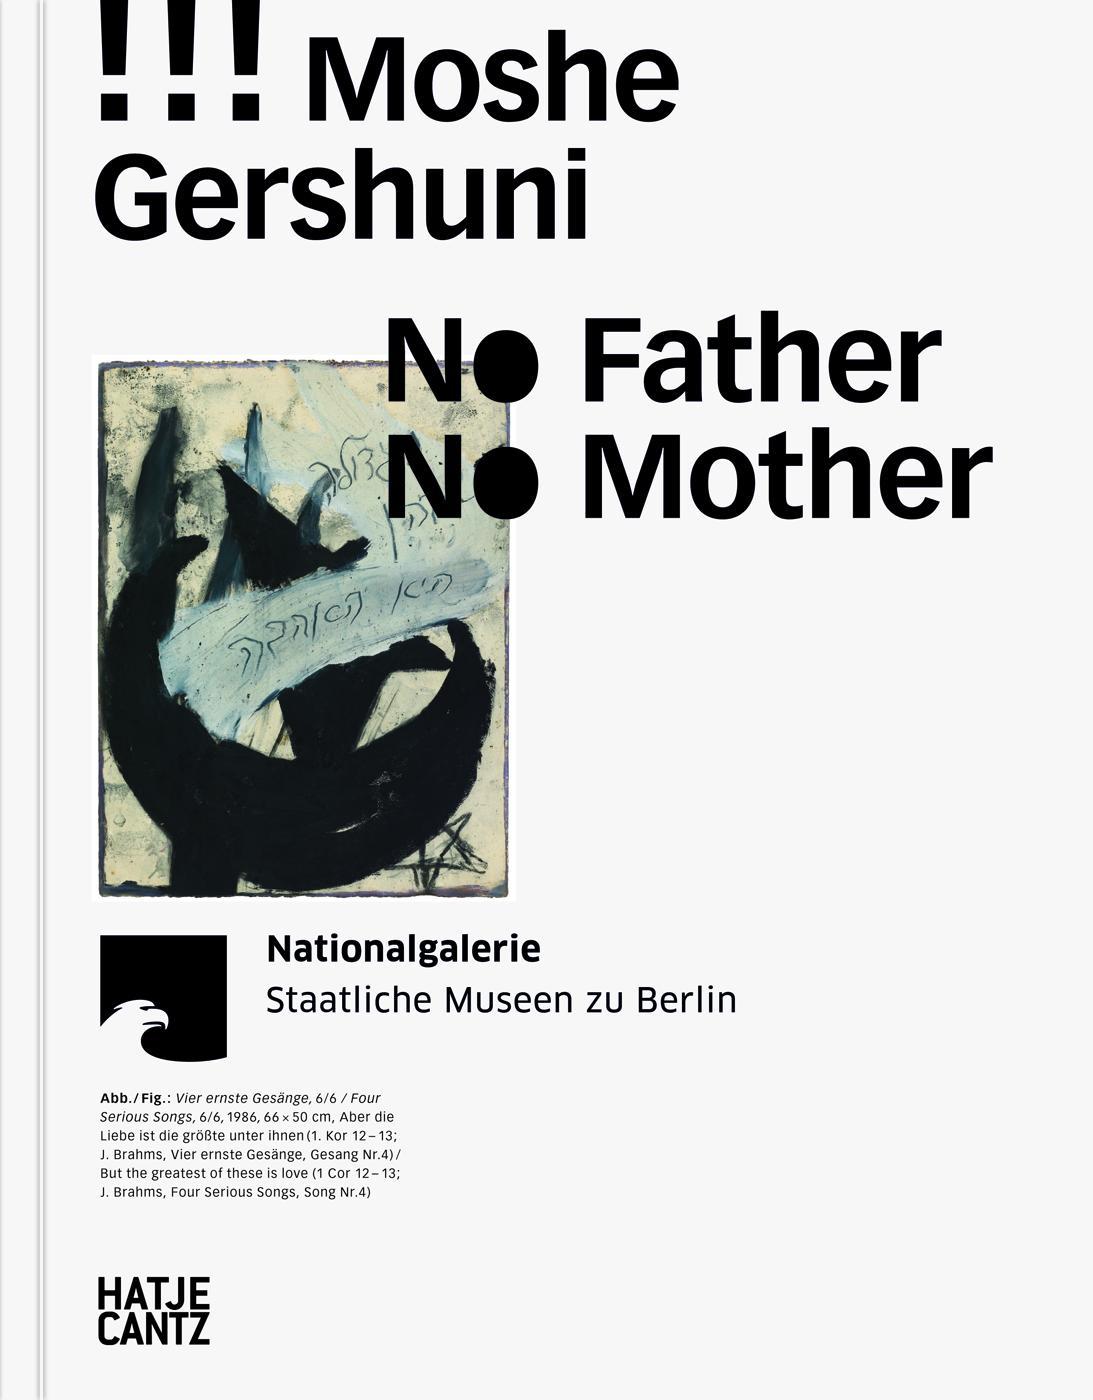 Katalog Moshe Gershuni. No Father No Mother*